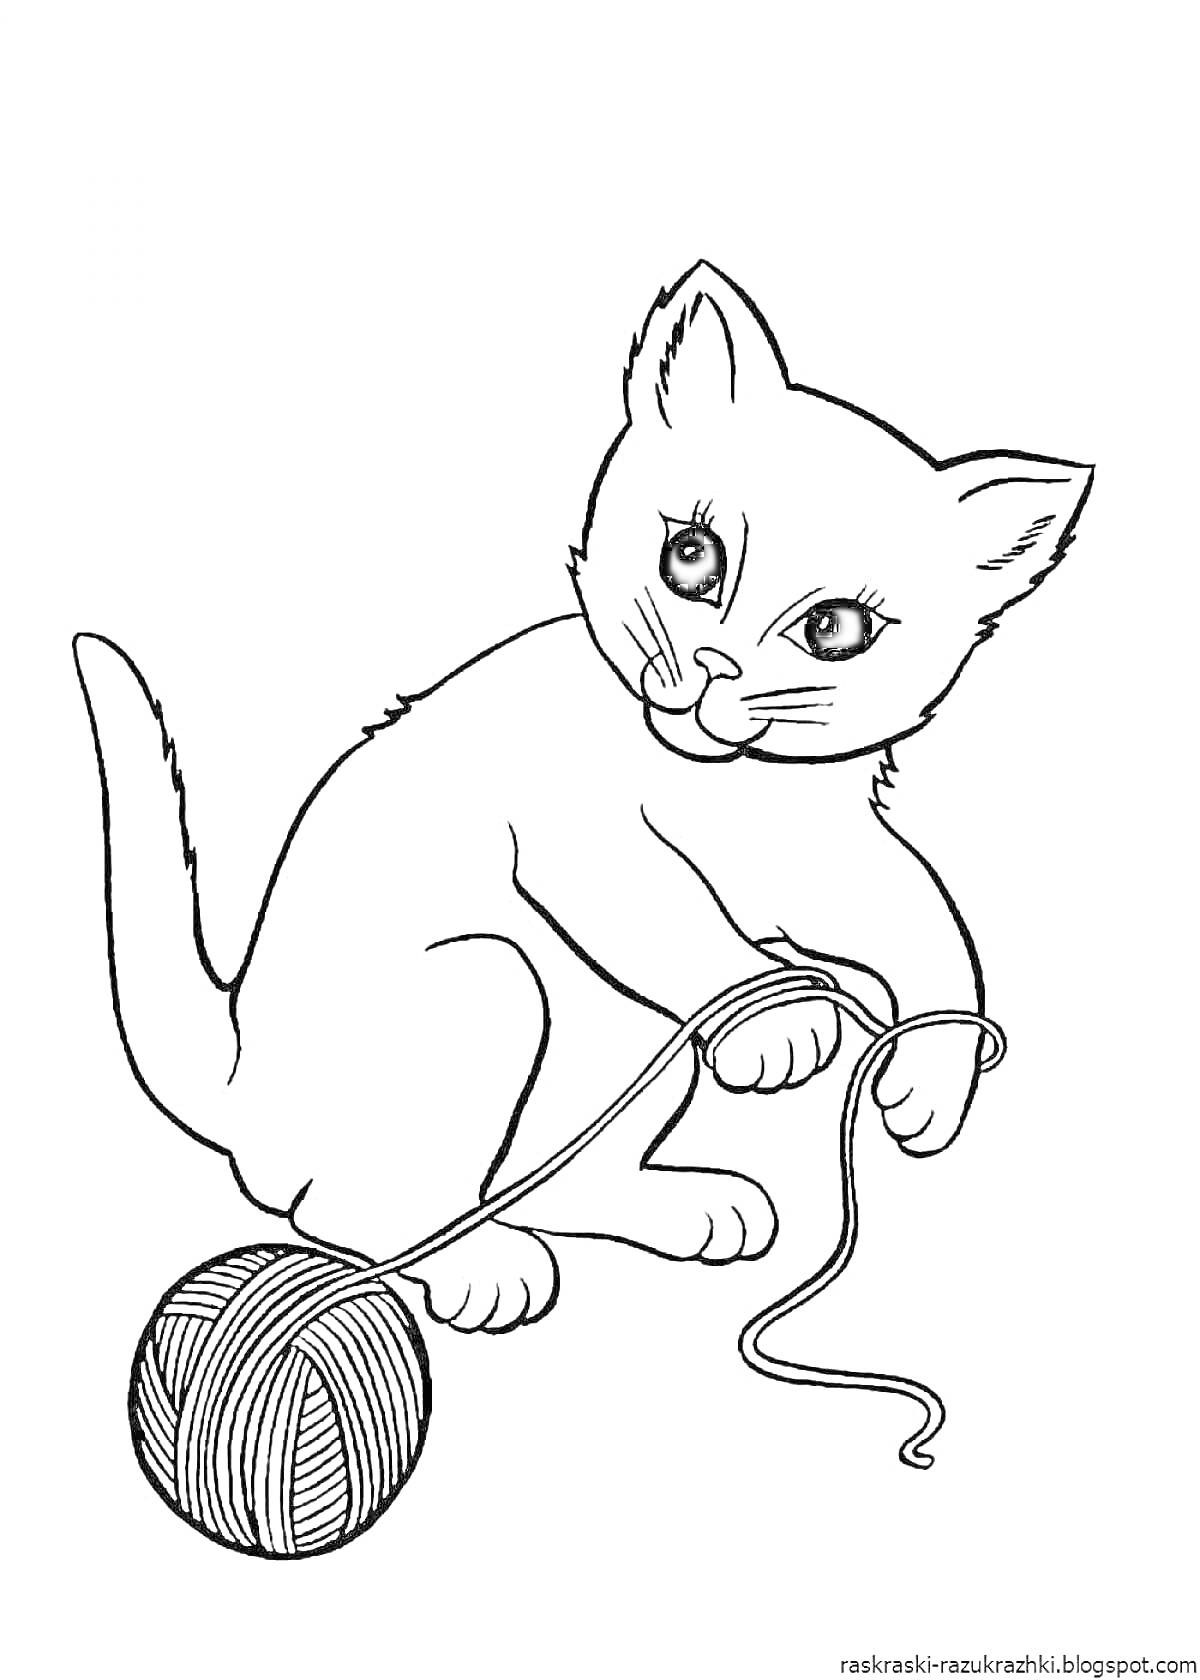 Кошка, играющая с клубком пряжи